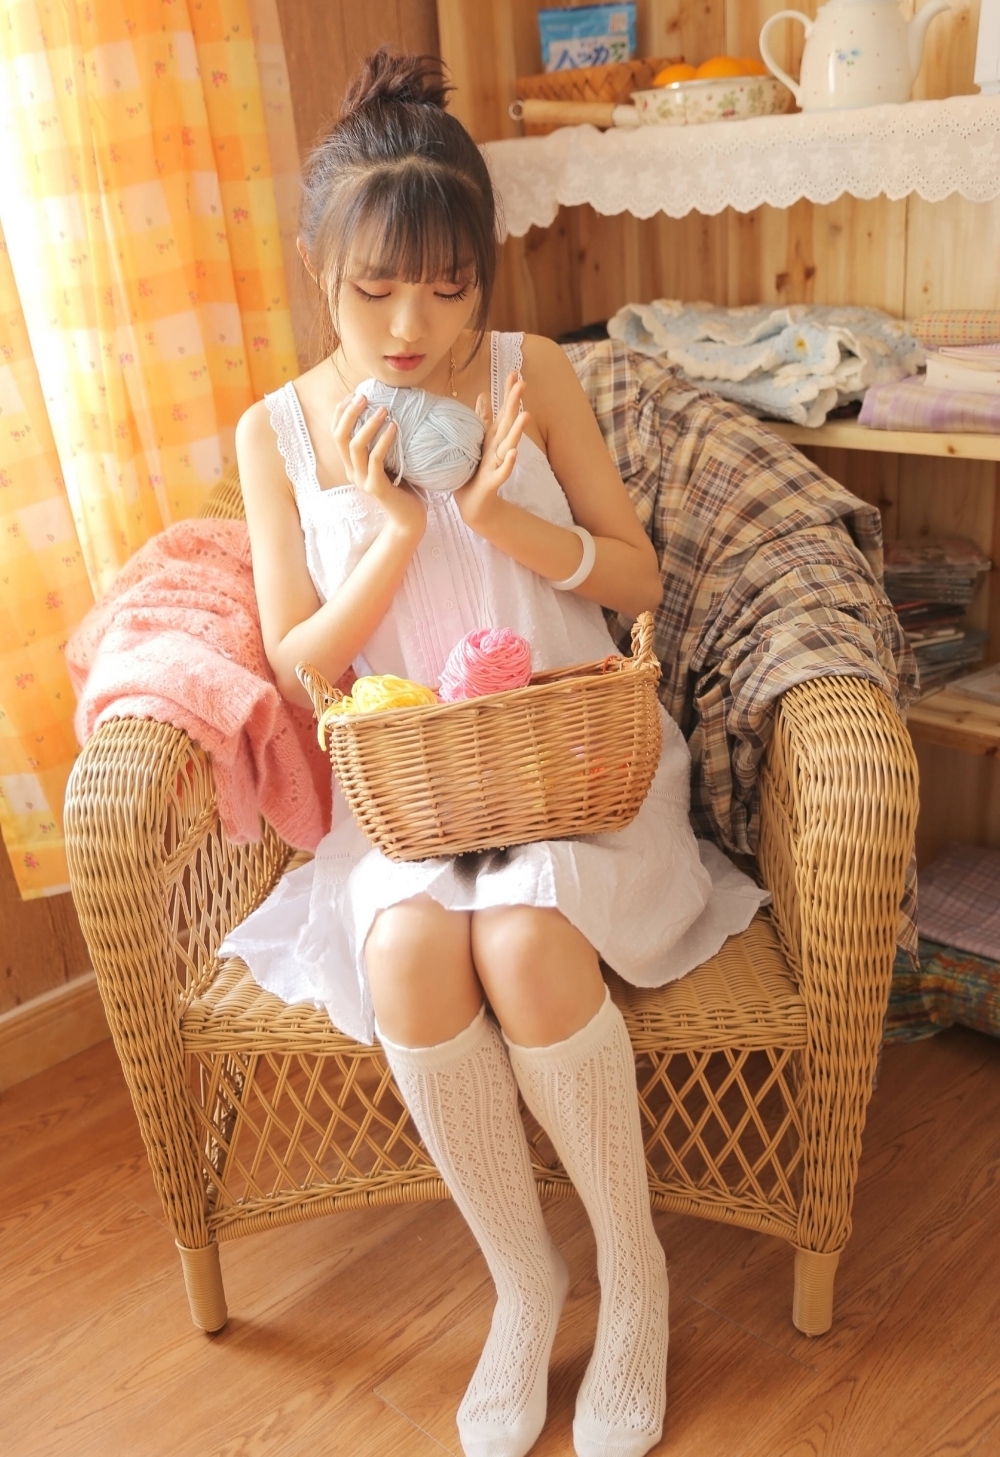 日系针织白袜吊带短裙居家少女私房写真